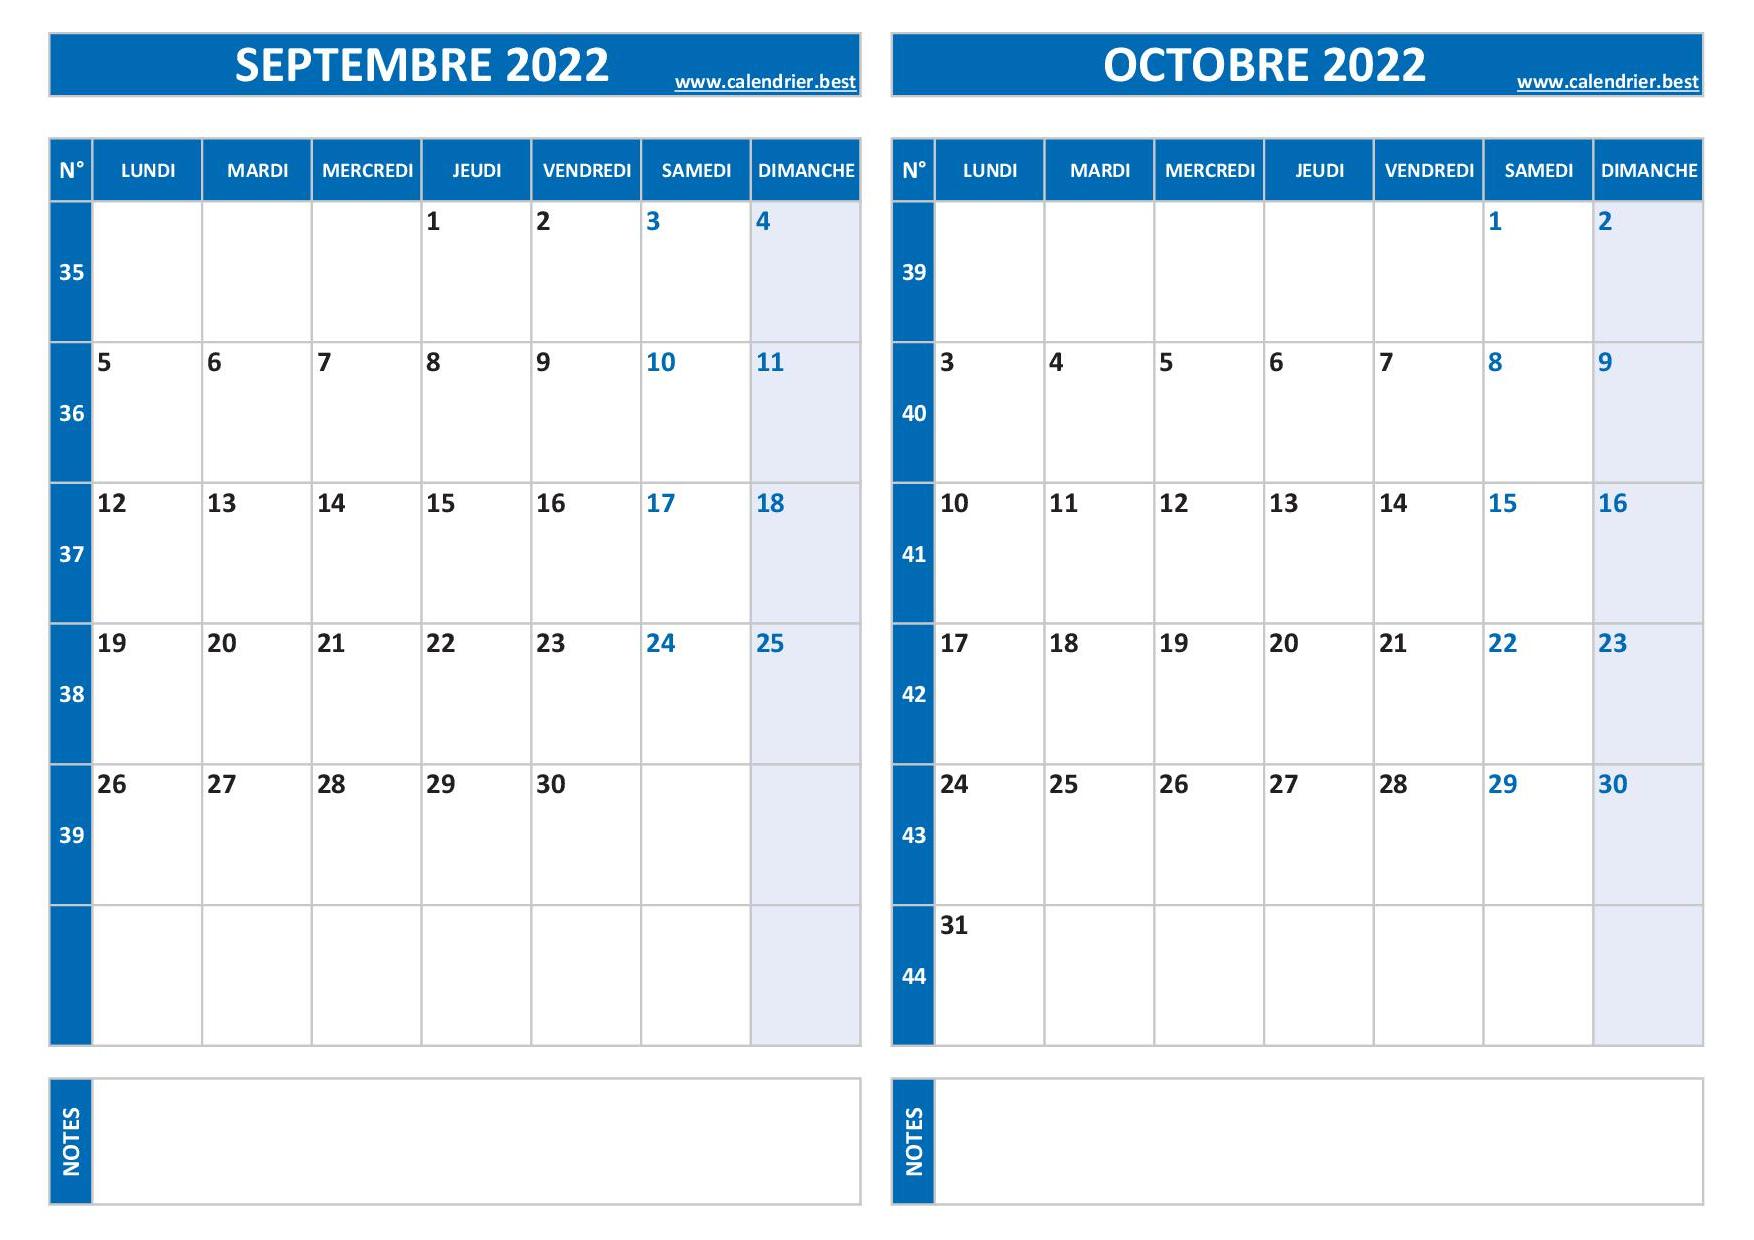 Calendrier septembre et octobre 2022 à imprimer -Calendrier.best